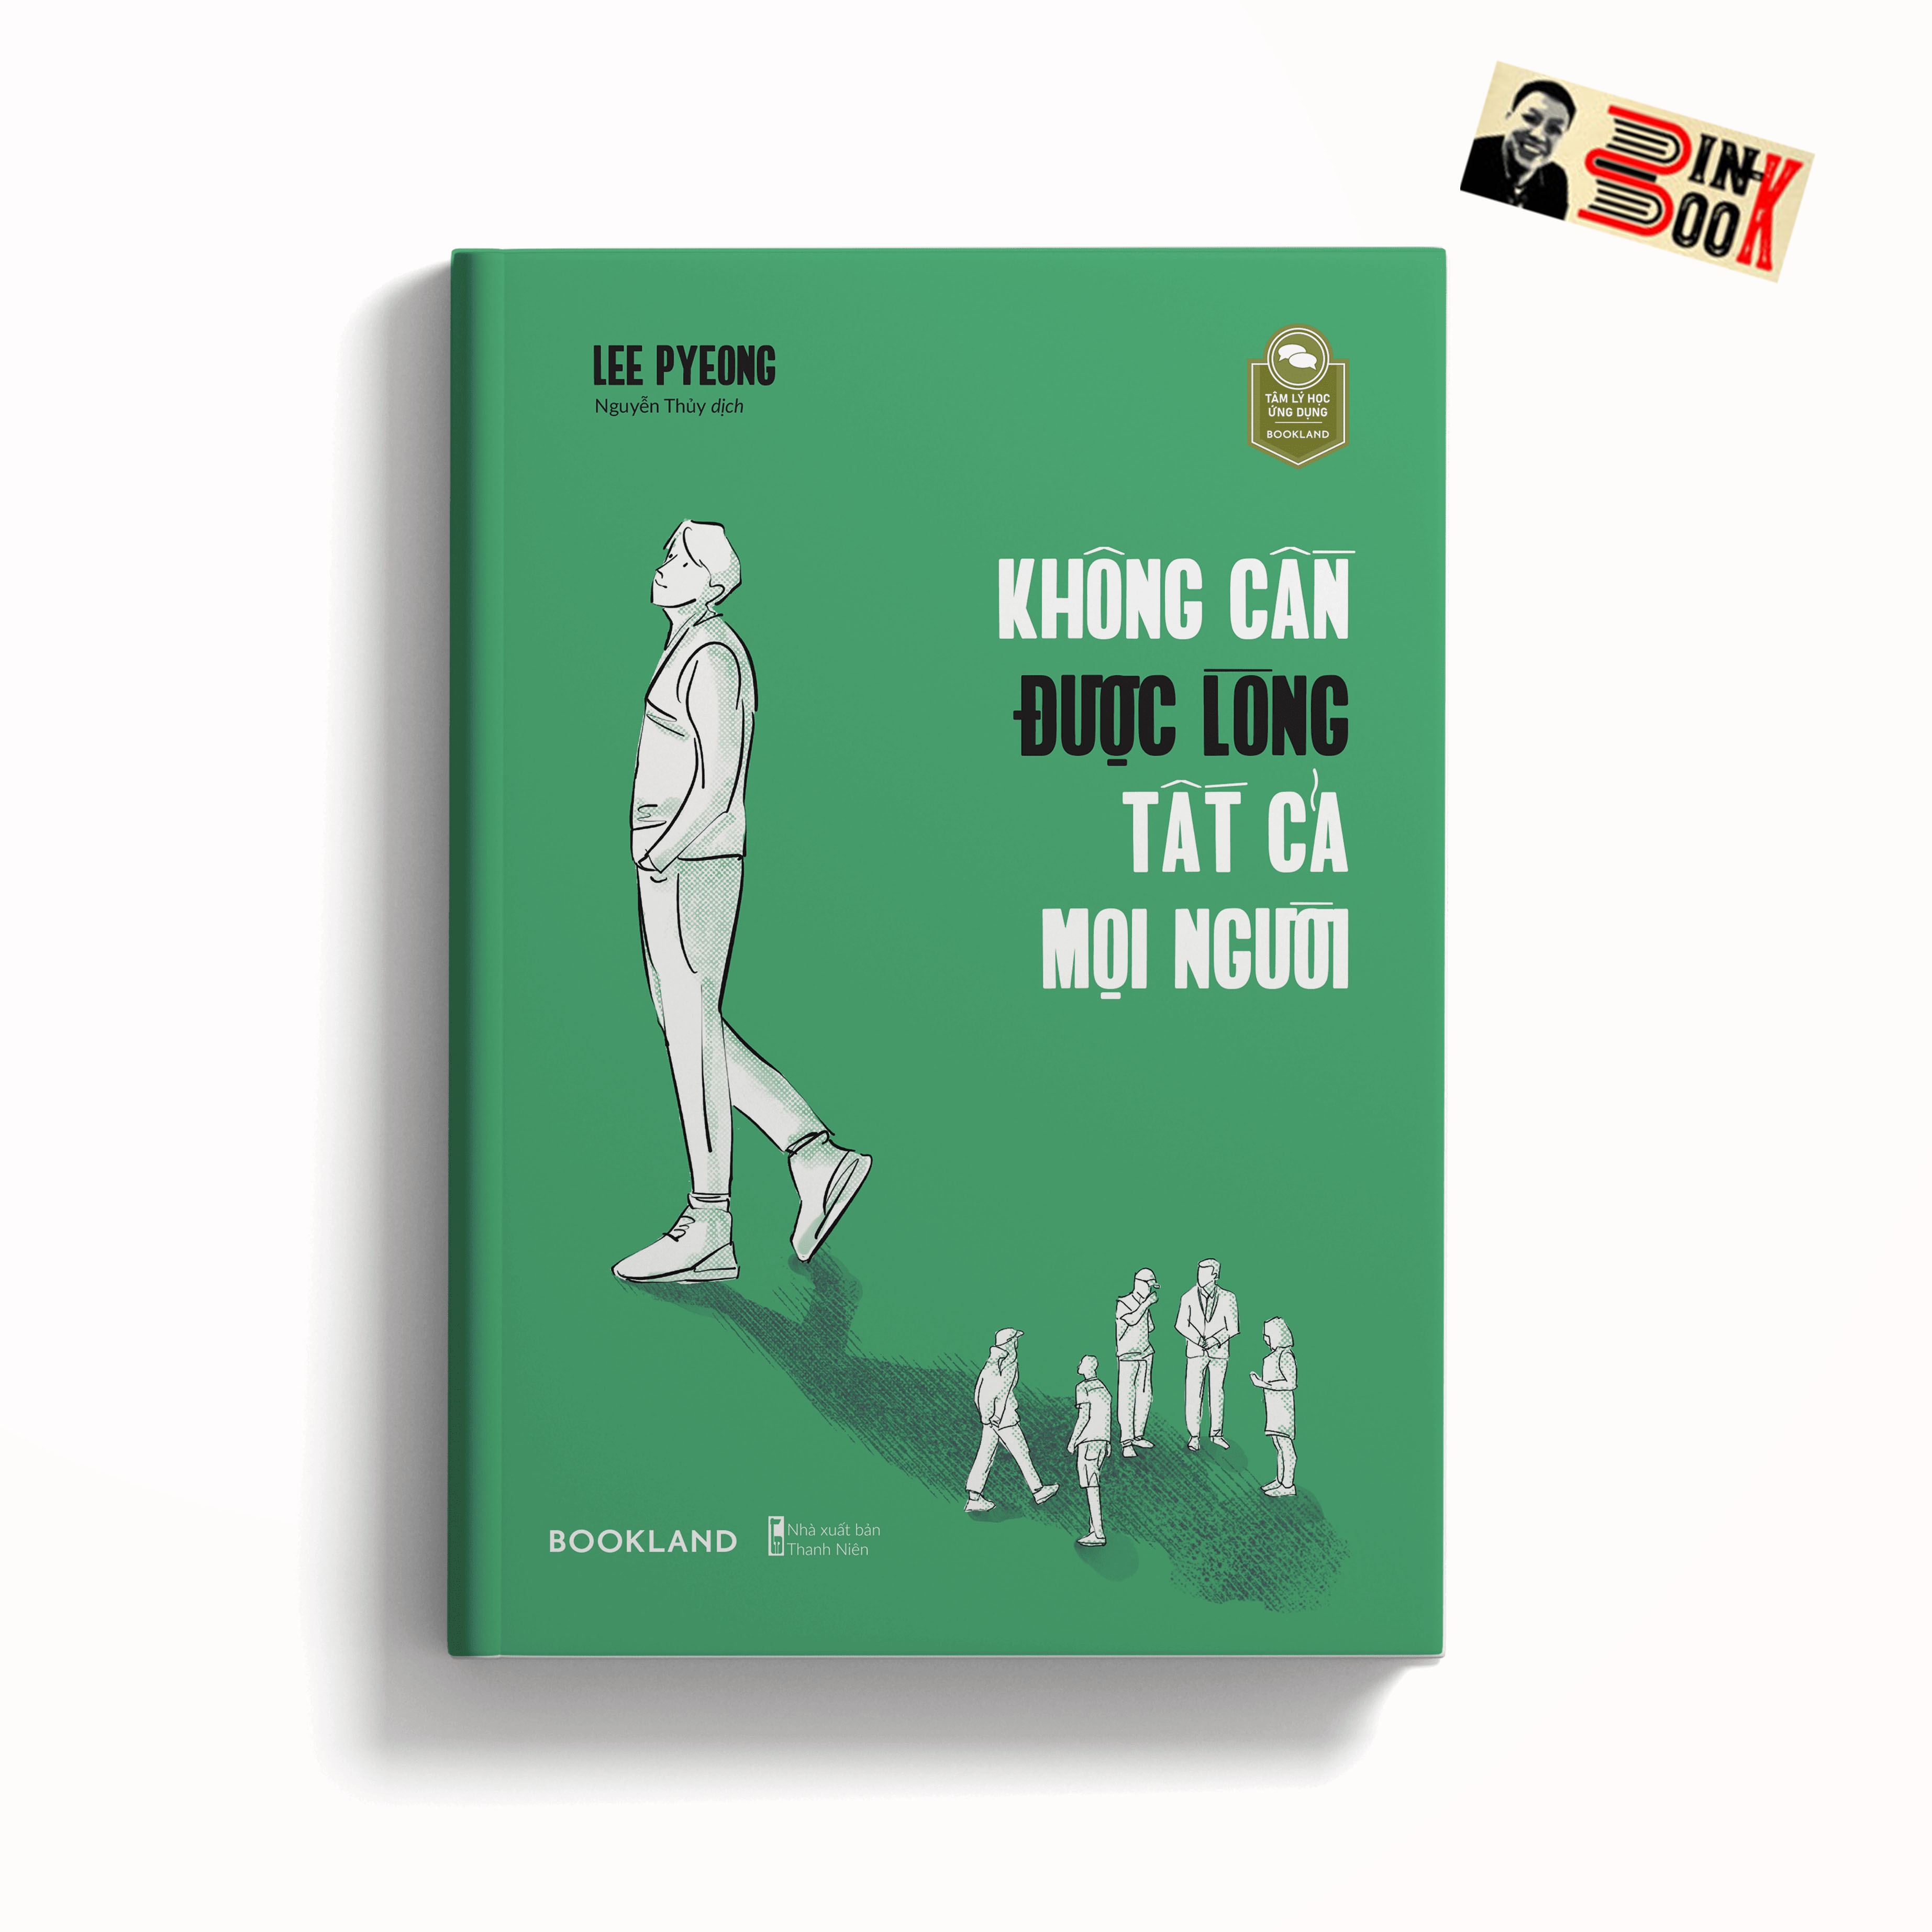 KHÔNG CẦN ĐƯỢC LÒNG TẤT CẢ NỌI NGƯỜI – Lee Pyeong – Nguyễn Thủy dịch – Bookland – AZ VIETNAM – NXB Thanh Niên (Bìa mềm)